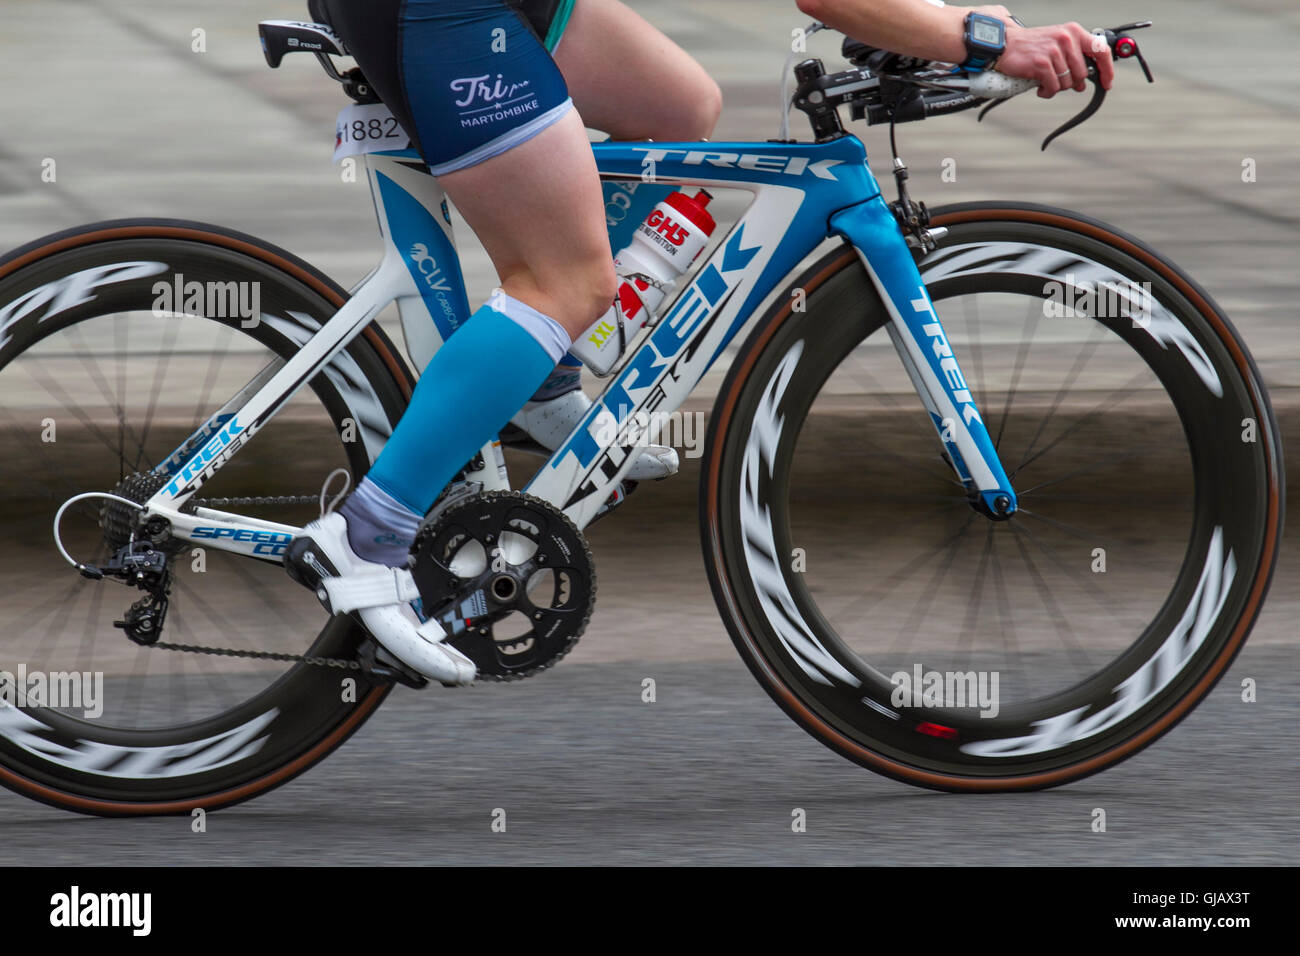 Vélo de route trek, les cadres de bicyclette, en fibre de carbone  monocoque, vélo composite ; les cyclistes à l'élite du Championnat  britannique 2016 Triathlon Tri comme Liverpool accueille le meilleur de